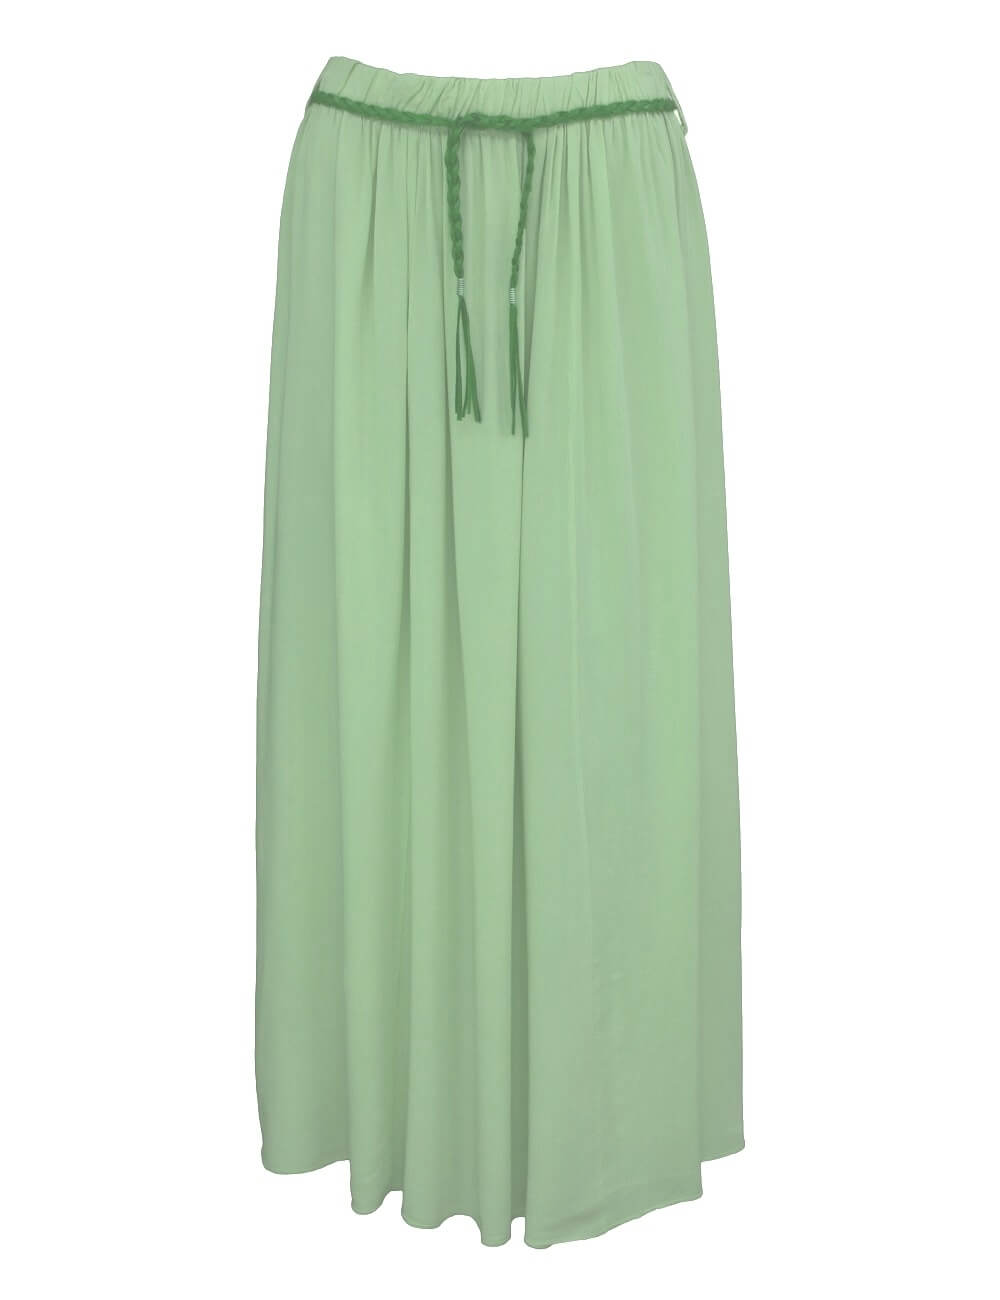 Letní jednobarevná dlouhá sukně - mentolově zelená - vel. UNI